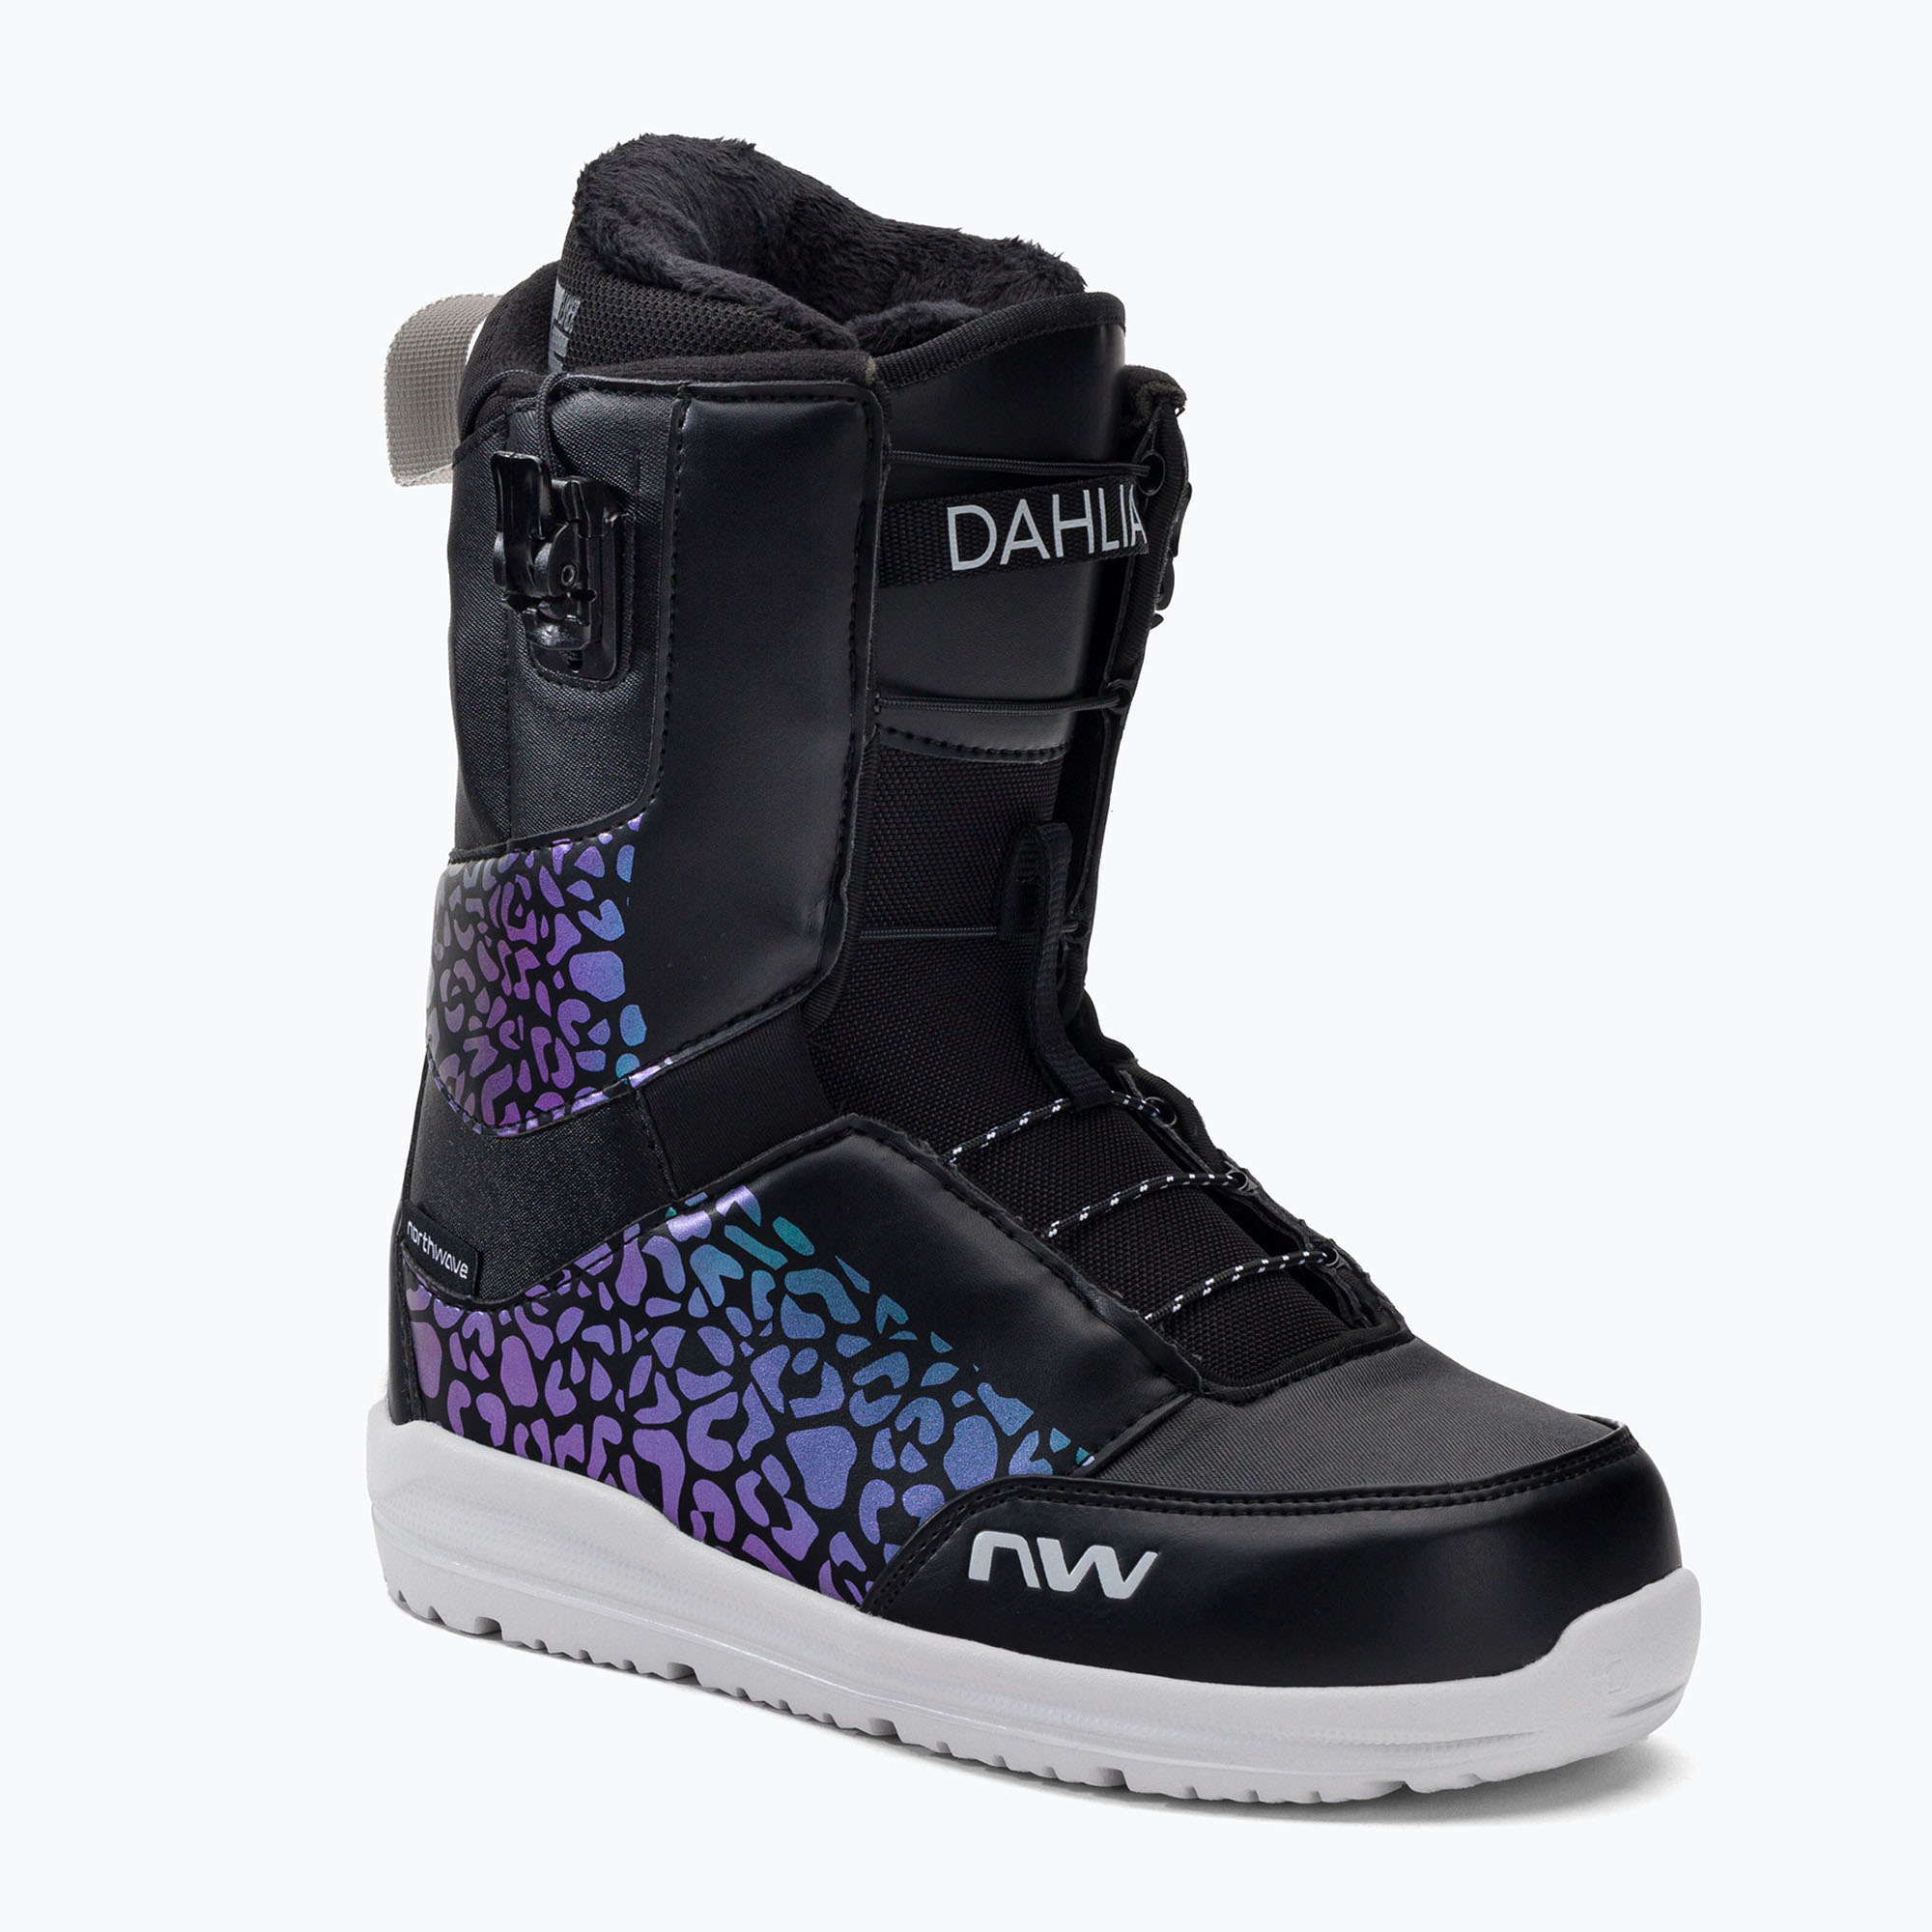 Dámske snowboardové topánky Northwave Dahlia SLS čierno-fialové 722151-16